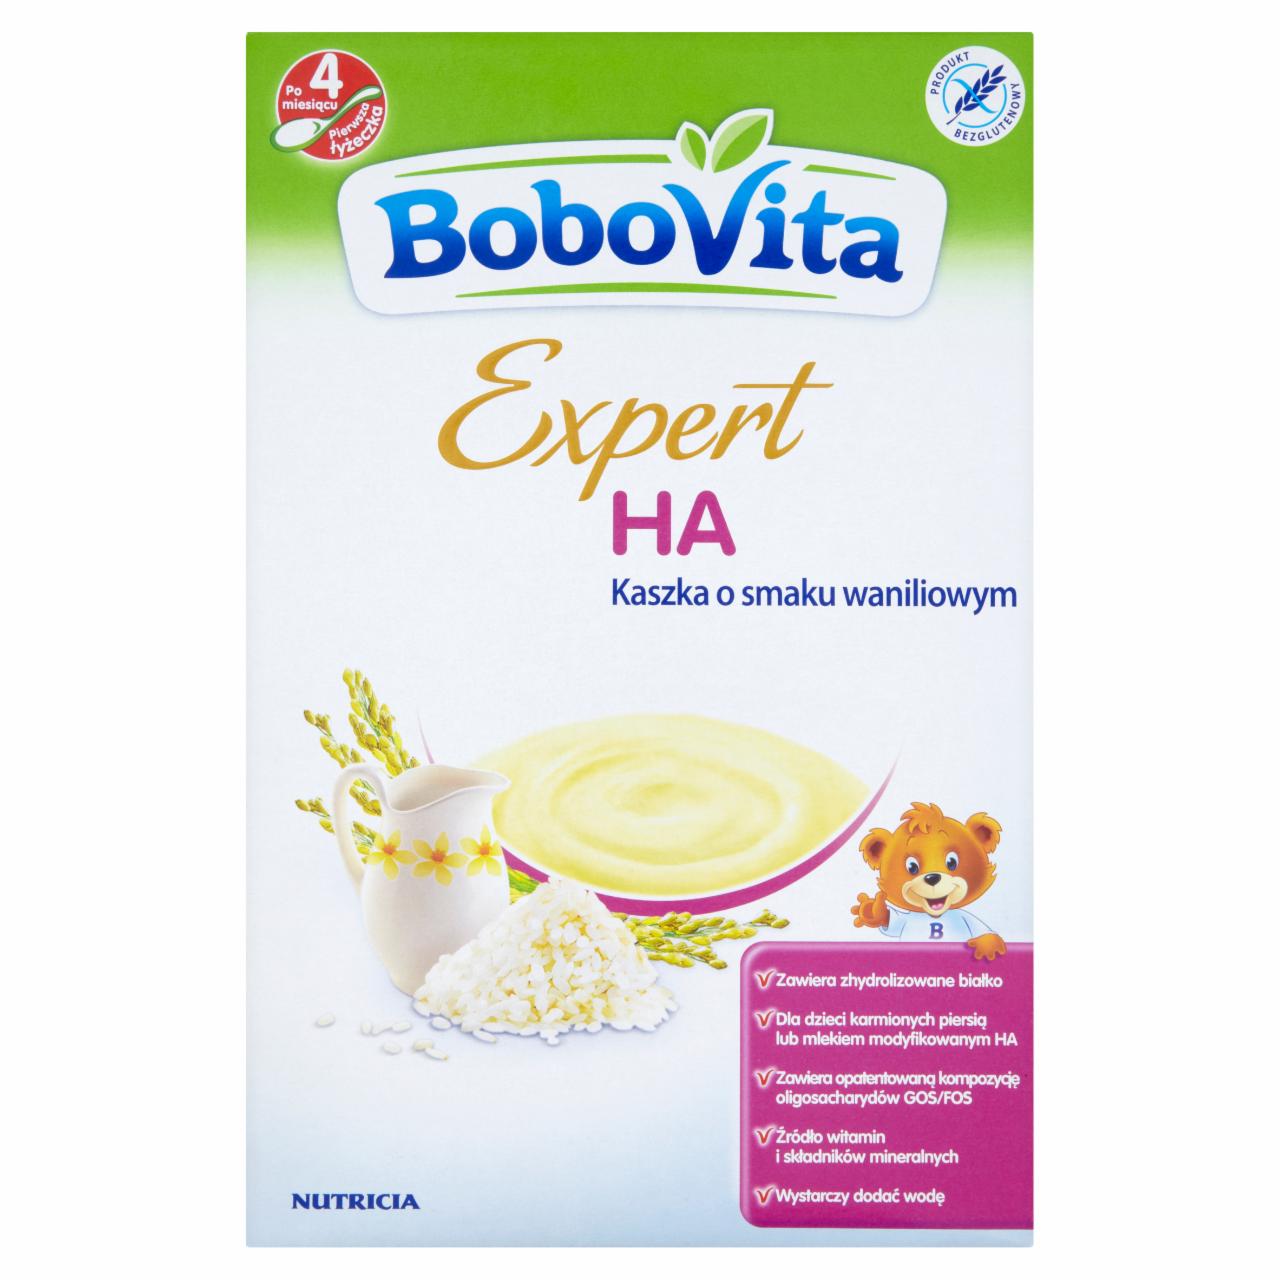 Zdjęcia - BoboVita Expert HA Kaszka o smaku waniliowym po 4 miesiącu 200 g